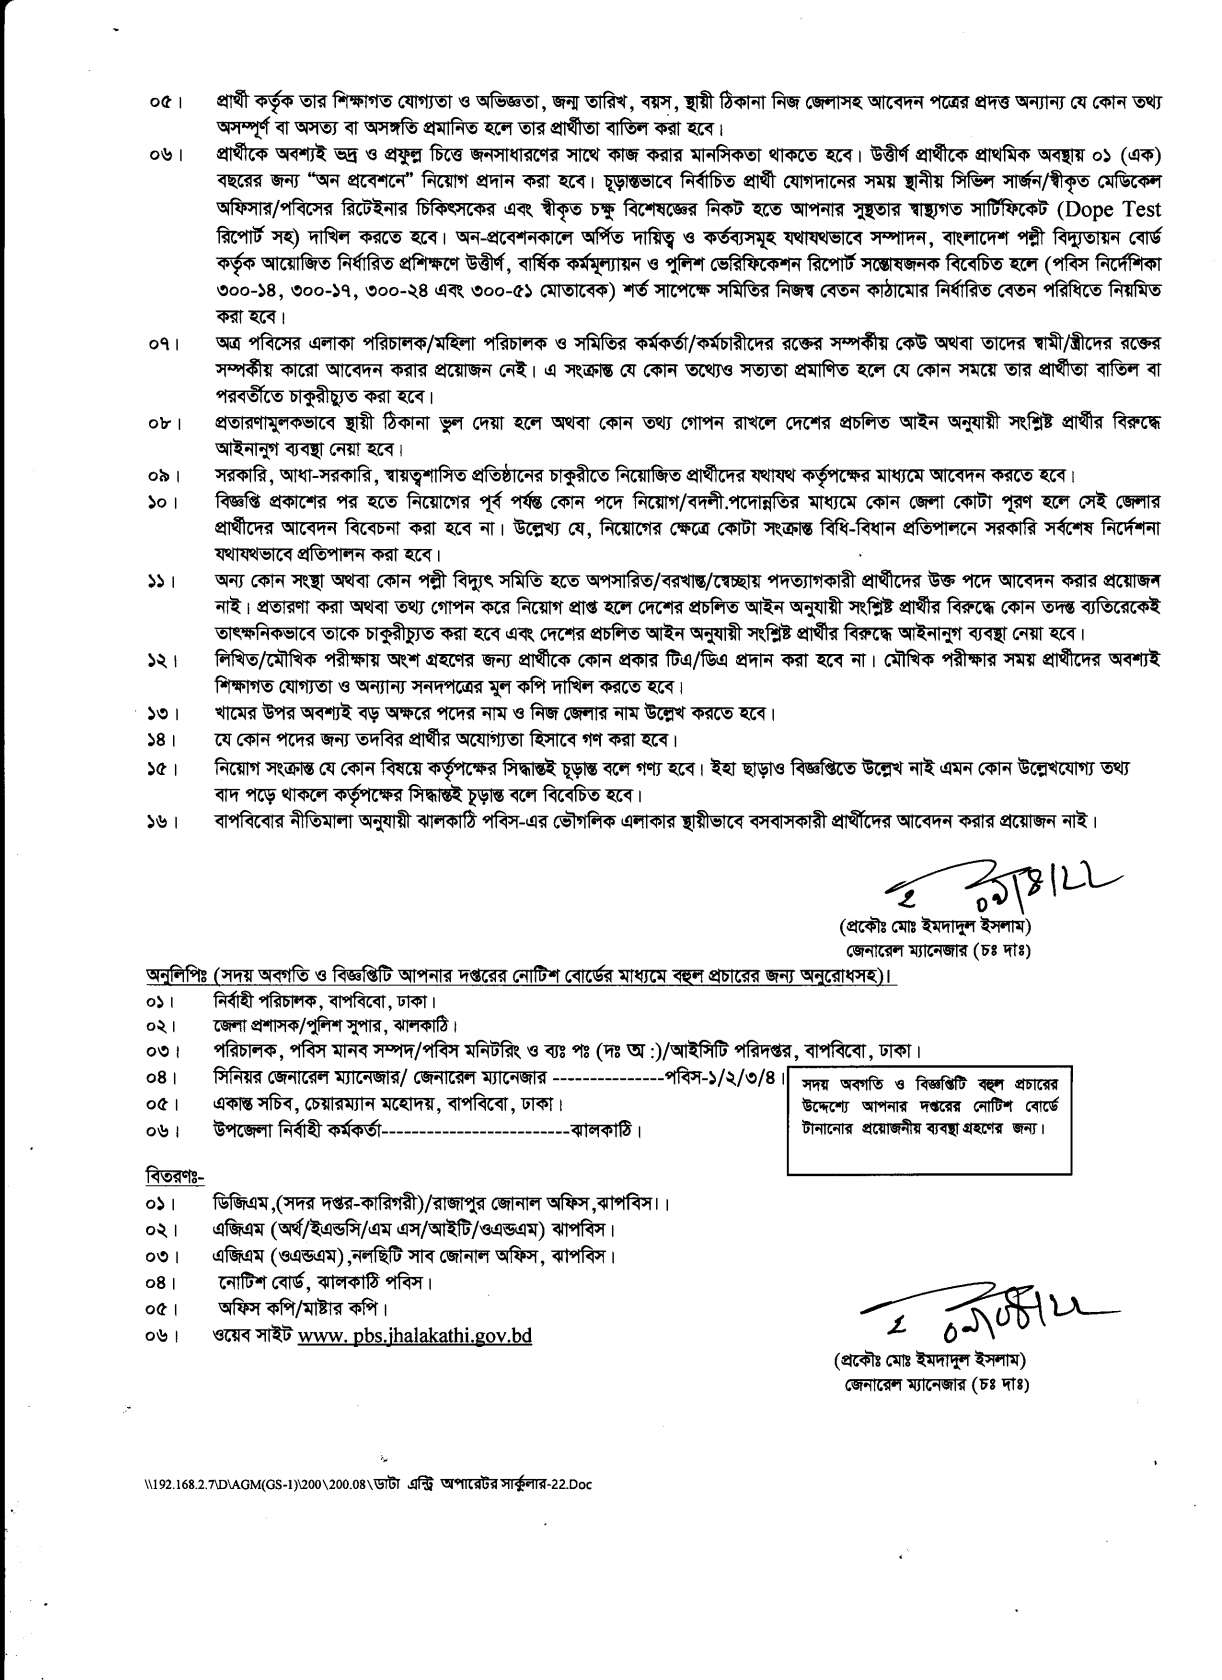 ঝালকাঠি পল্লী বিদ্যুৎ সমিতি নিয়োগ বিজ্ঞপ্তি ২০২২ | Jhalokati Palli Bidyut Samiti Job Circular 2022